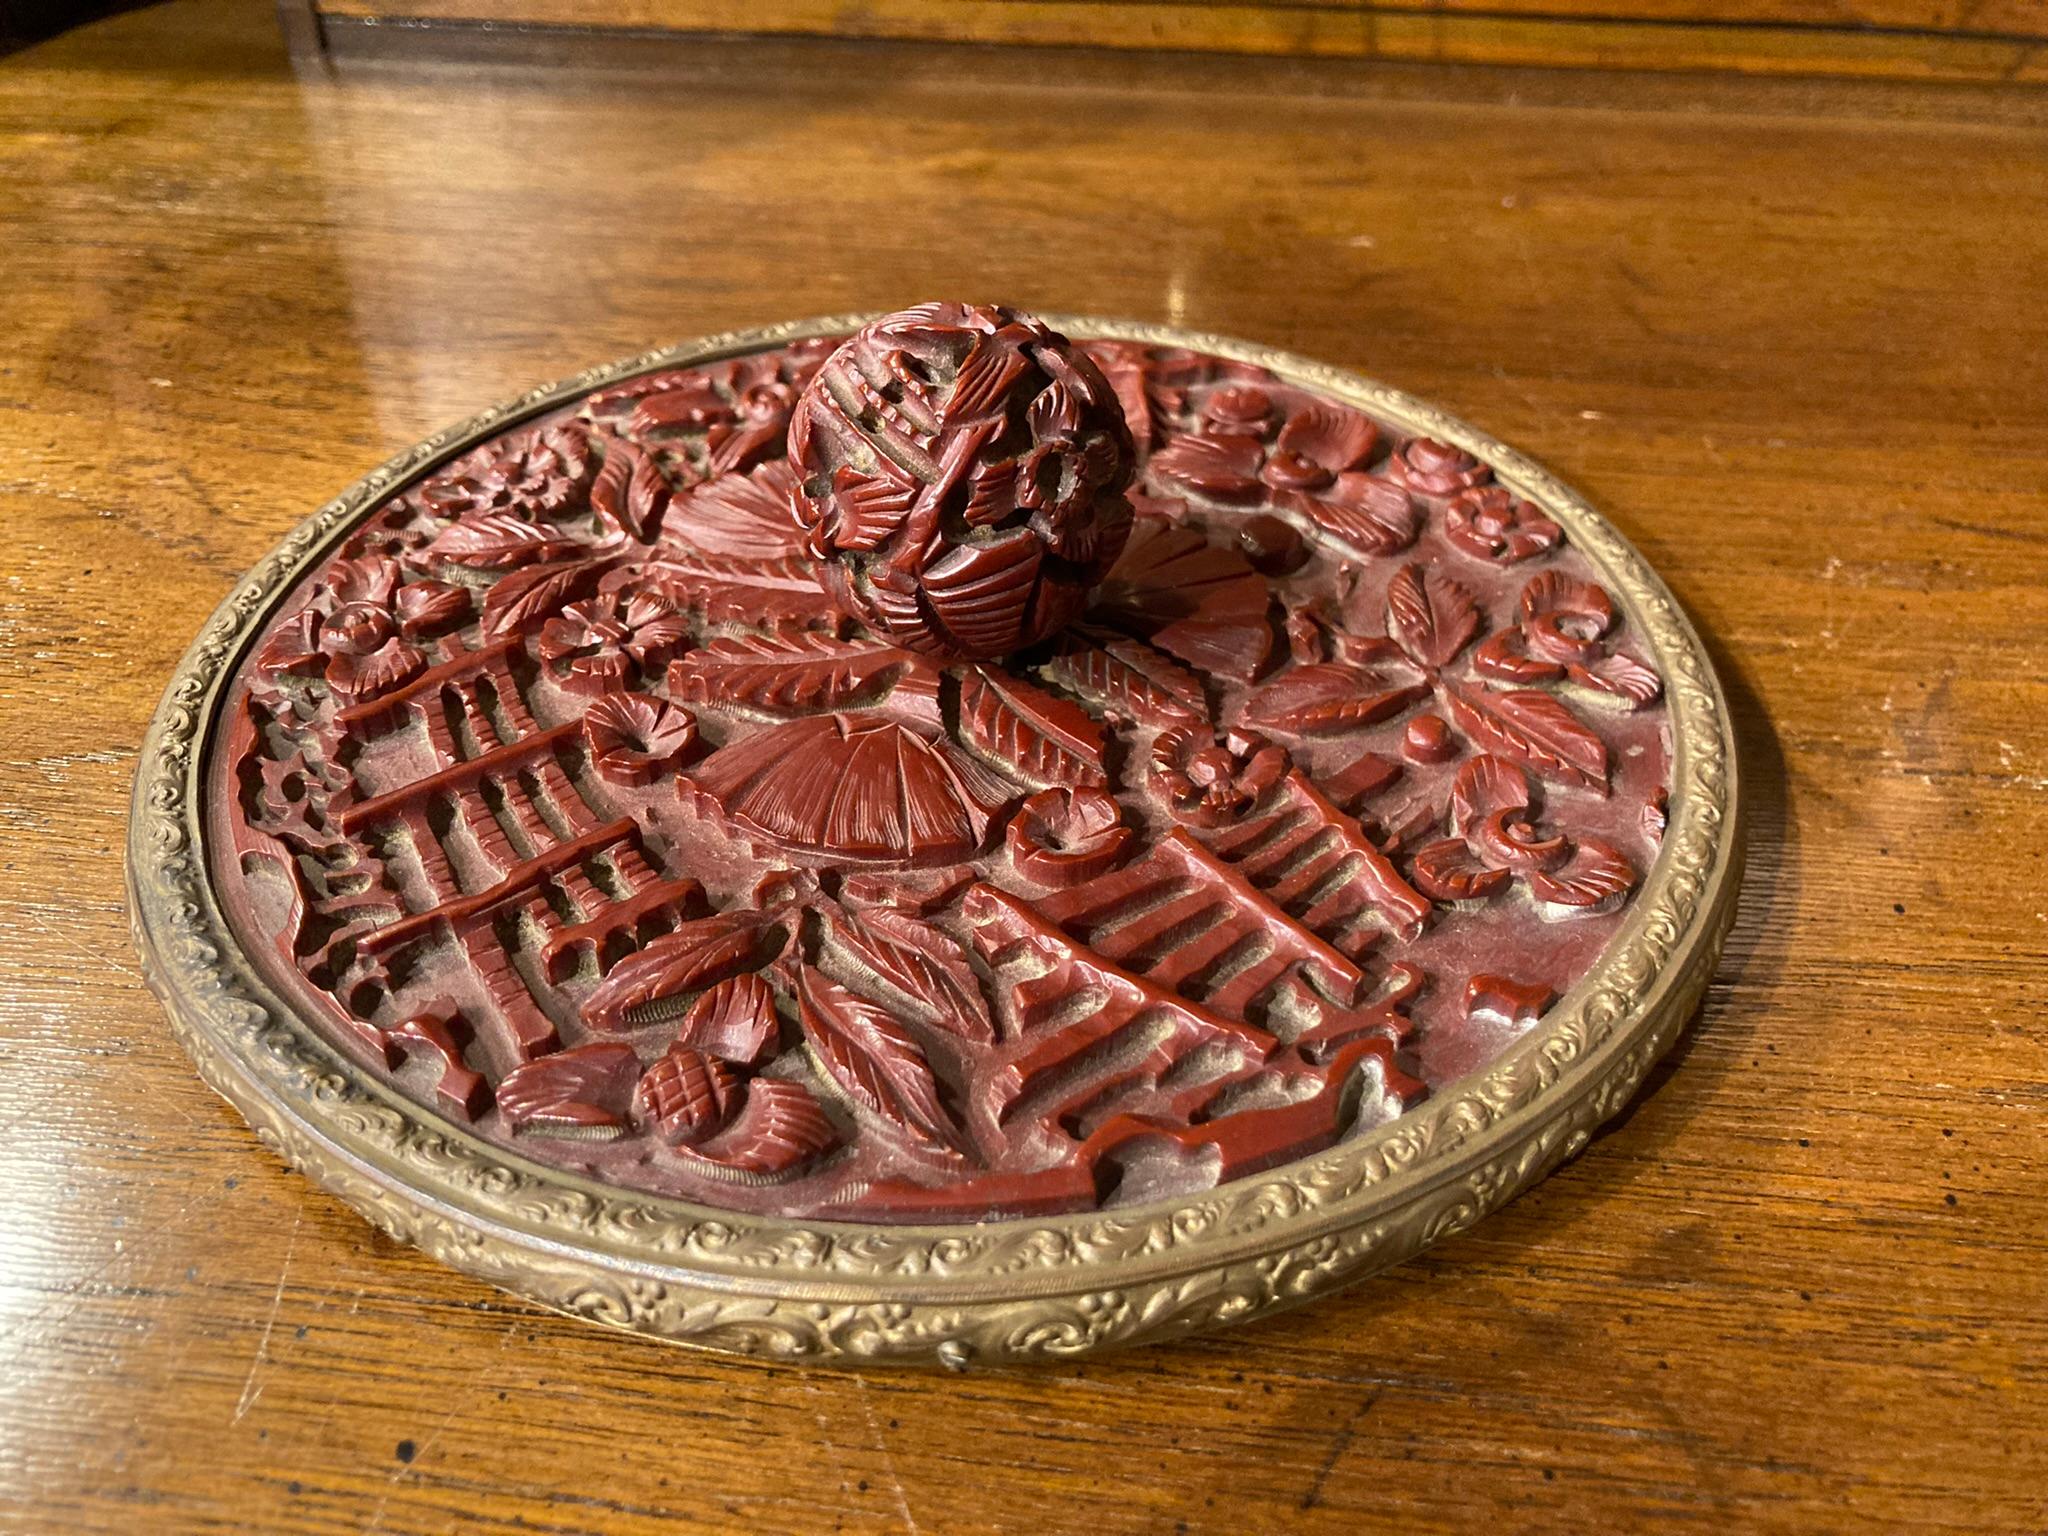 Chinesischer Zinnober-Lack-Handspiegel, mit floralen und rustikalen Gartenzäunen als Dekoration, alles in tiefem Relief geschnitzt. Gekrönt von einem runden Knopf, ebenfalls mit Blumenmuster. Eingefasst in einen Messingrahmen mit dem originalen